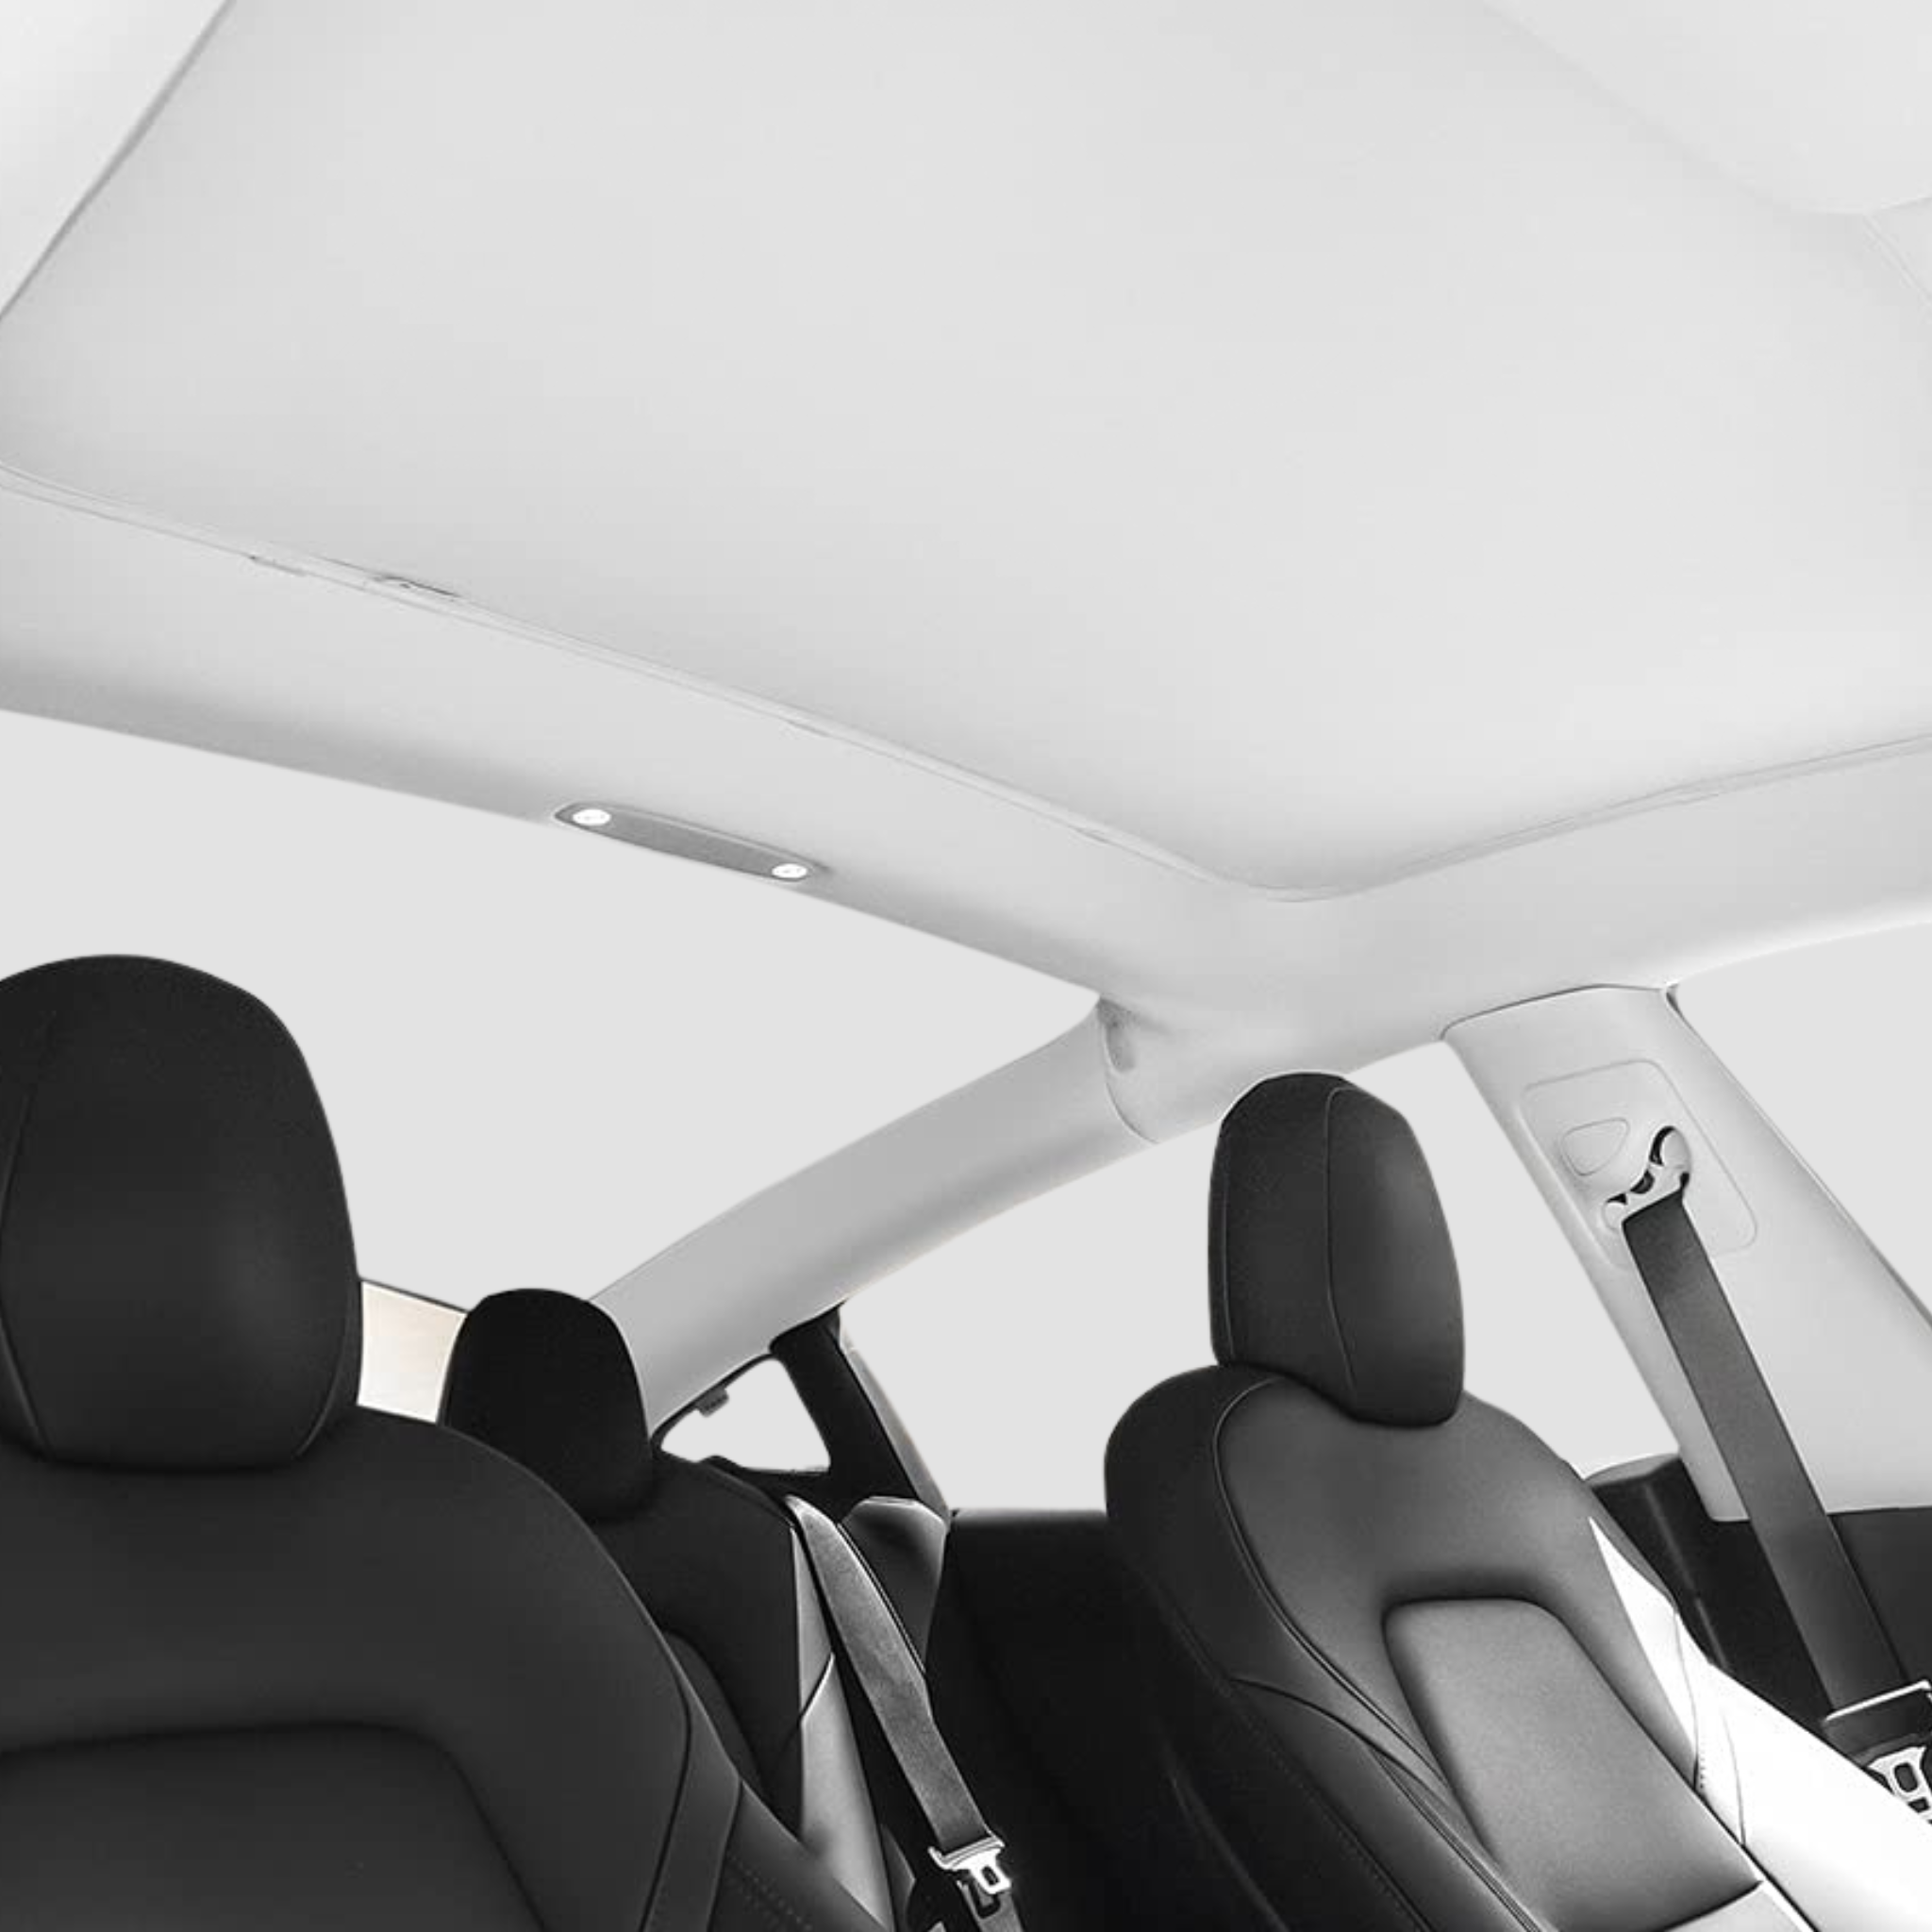 Exquisites Model3 Auto Sonnenschutz Sonnenschutz für Tesla Model 3 2021  Zubehör Dachfenster Sonnenblende Frontscheibe Sonnenschutz